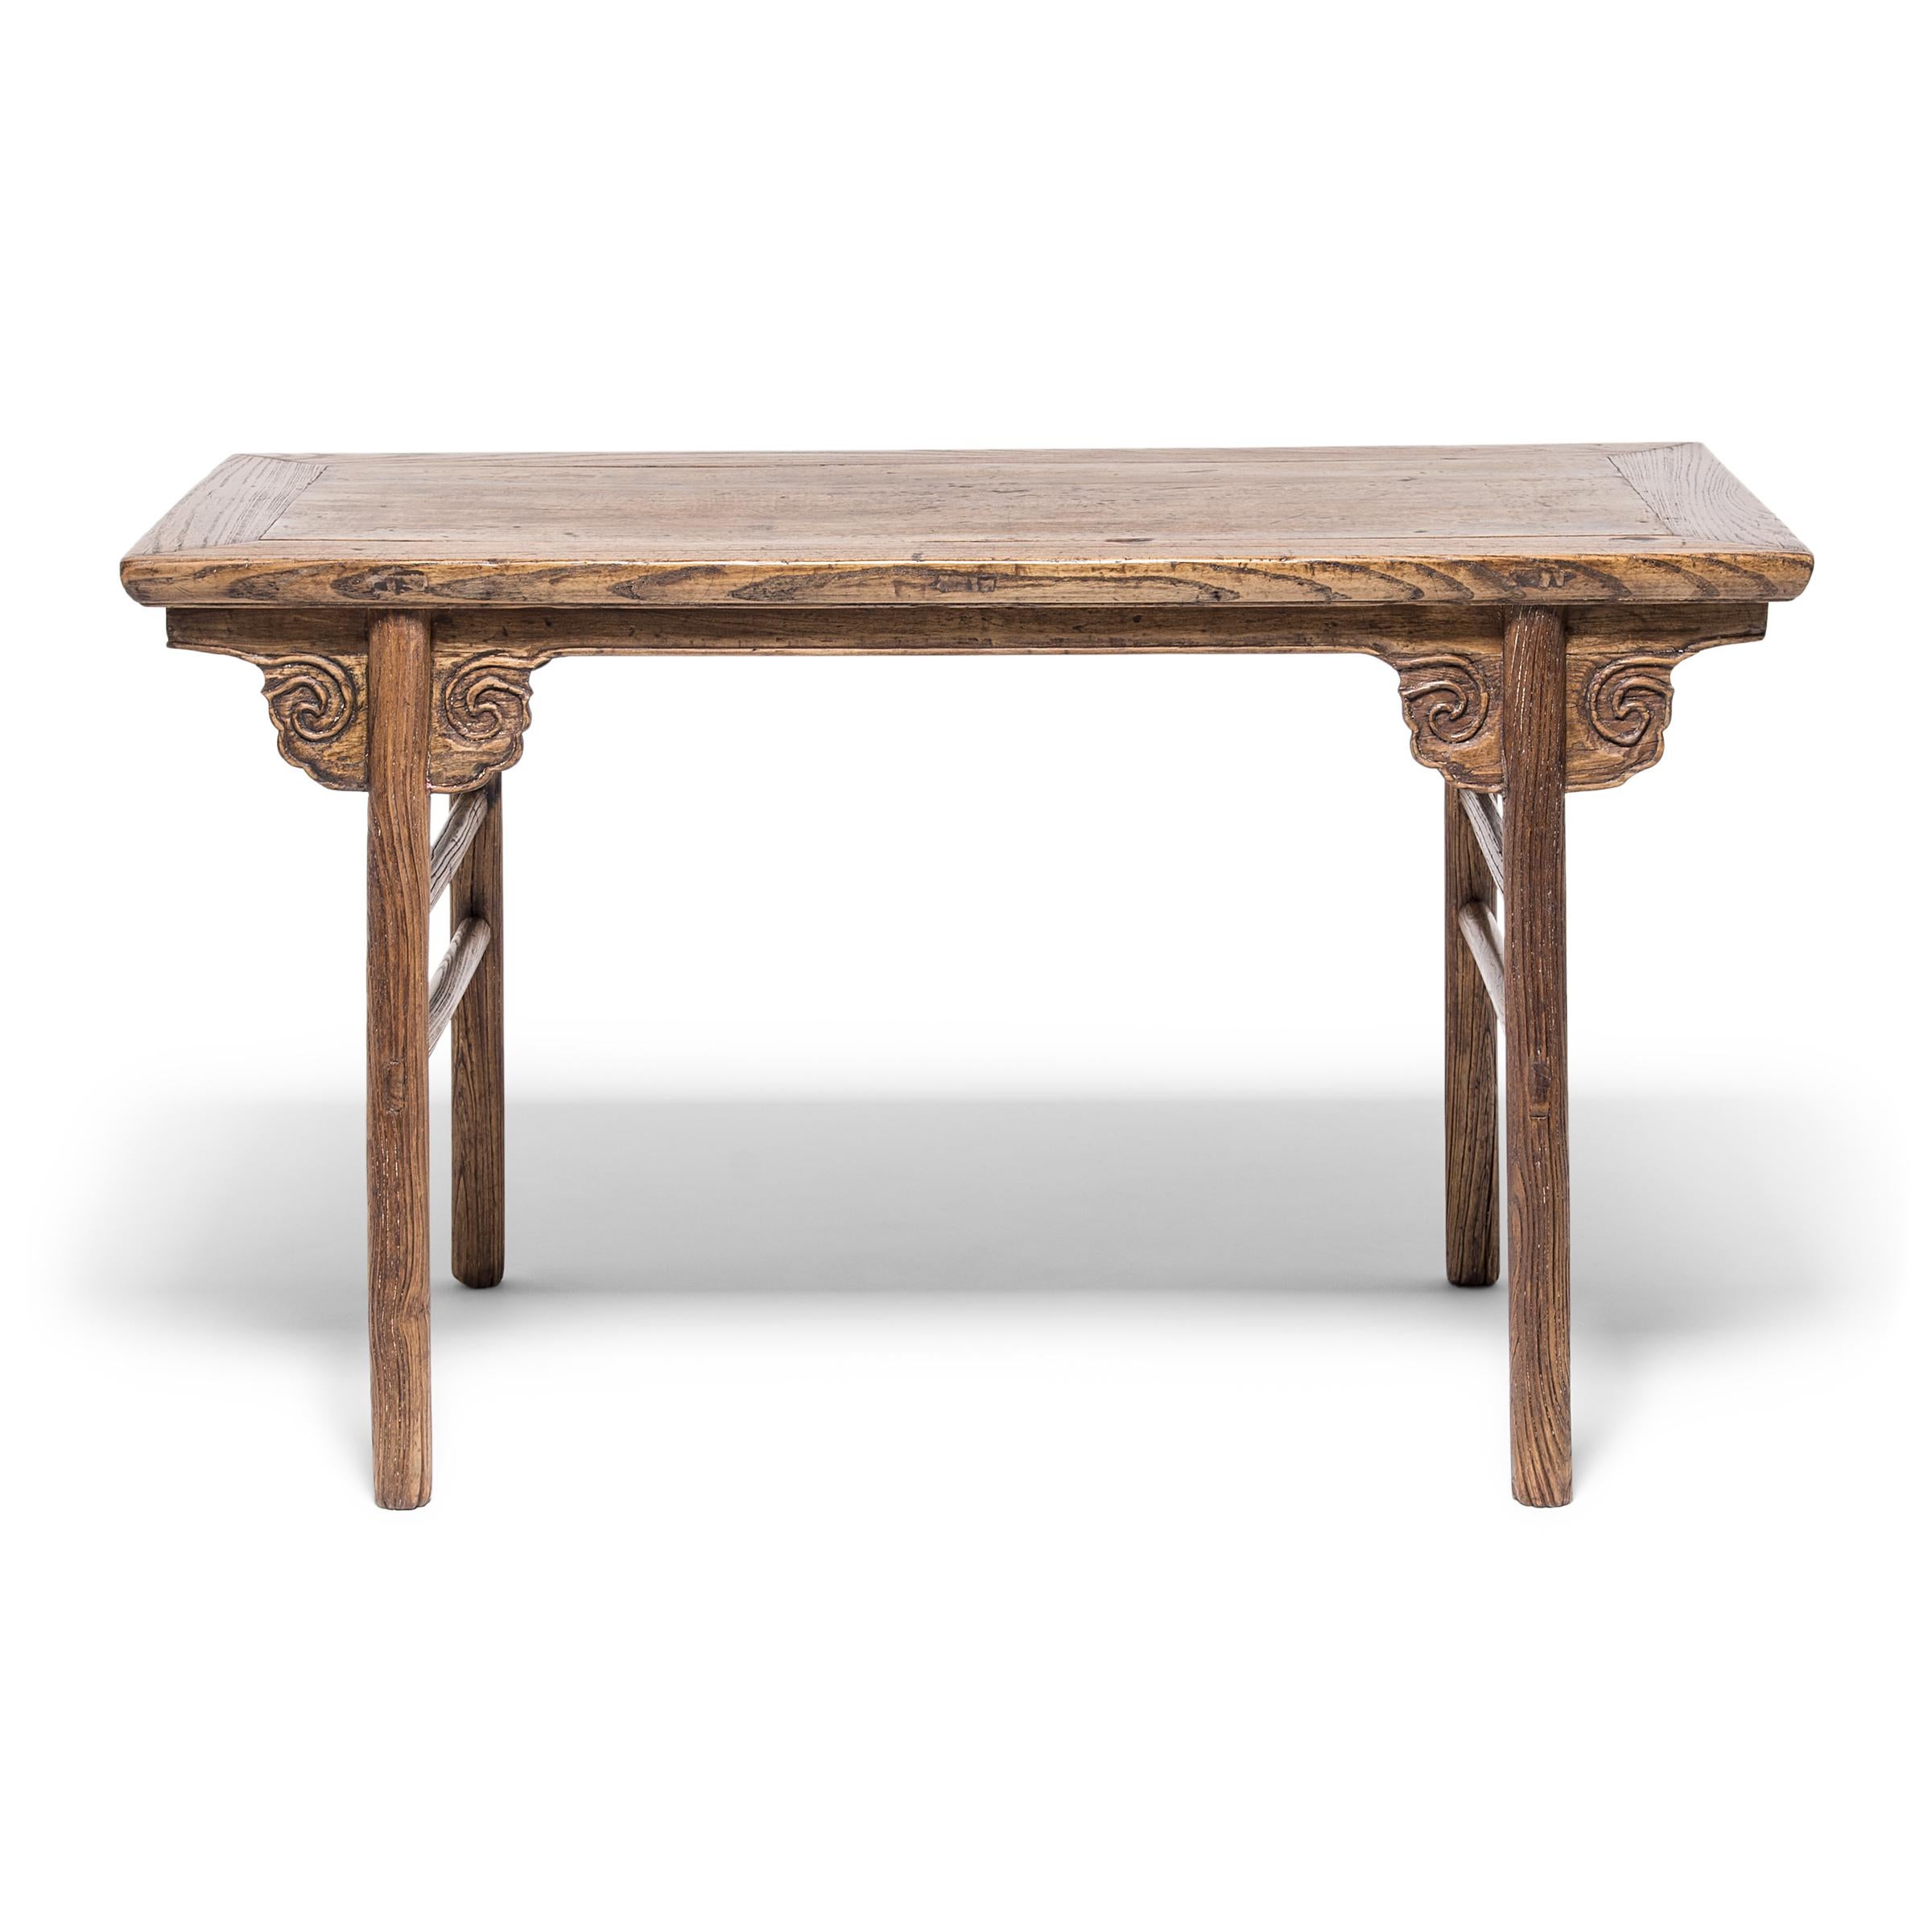 L'artisan qui a fabriqué cette table exceptionnelle en noyer a soigneusement sélectionné le morceau de bois parfait et a tiré le meilleur parti de la texture expressive à grain ouvert et de la couleur chaude brun doré du bois. Le grain